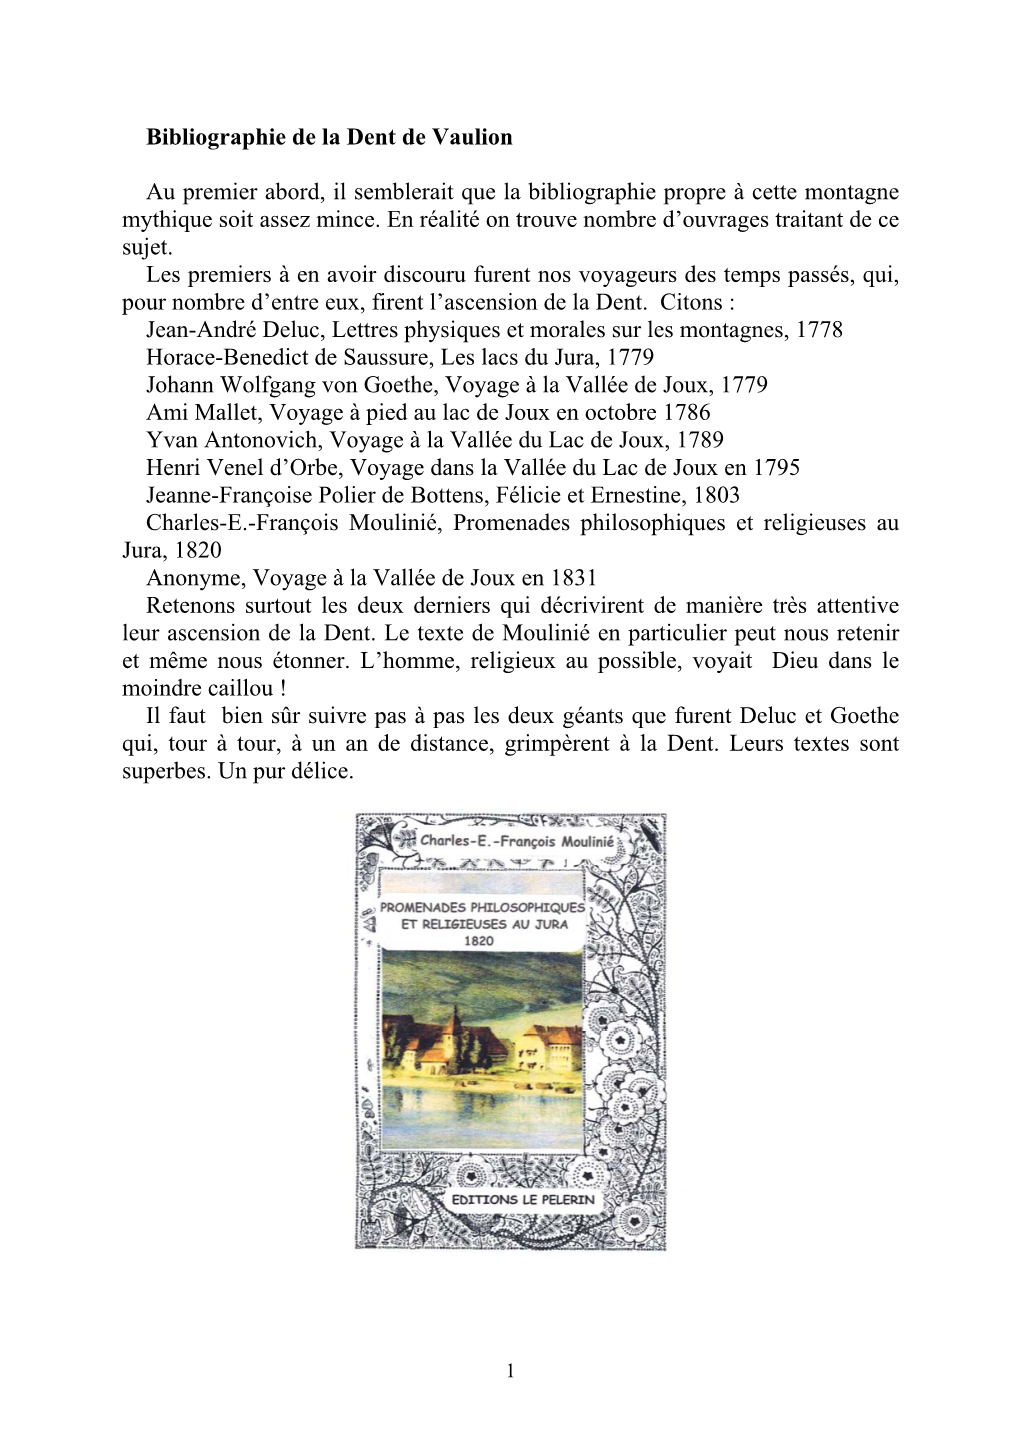 Bibliographie De La Dent De Vaulion .Pdf